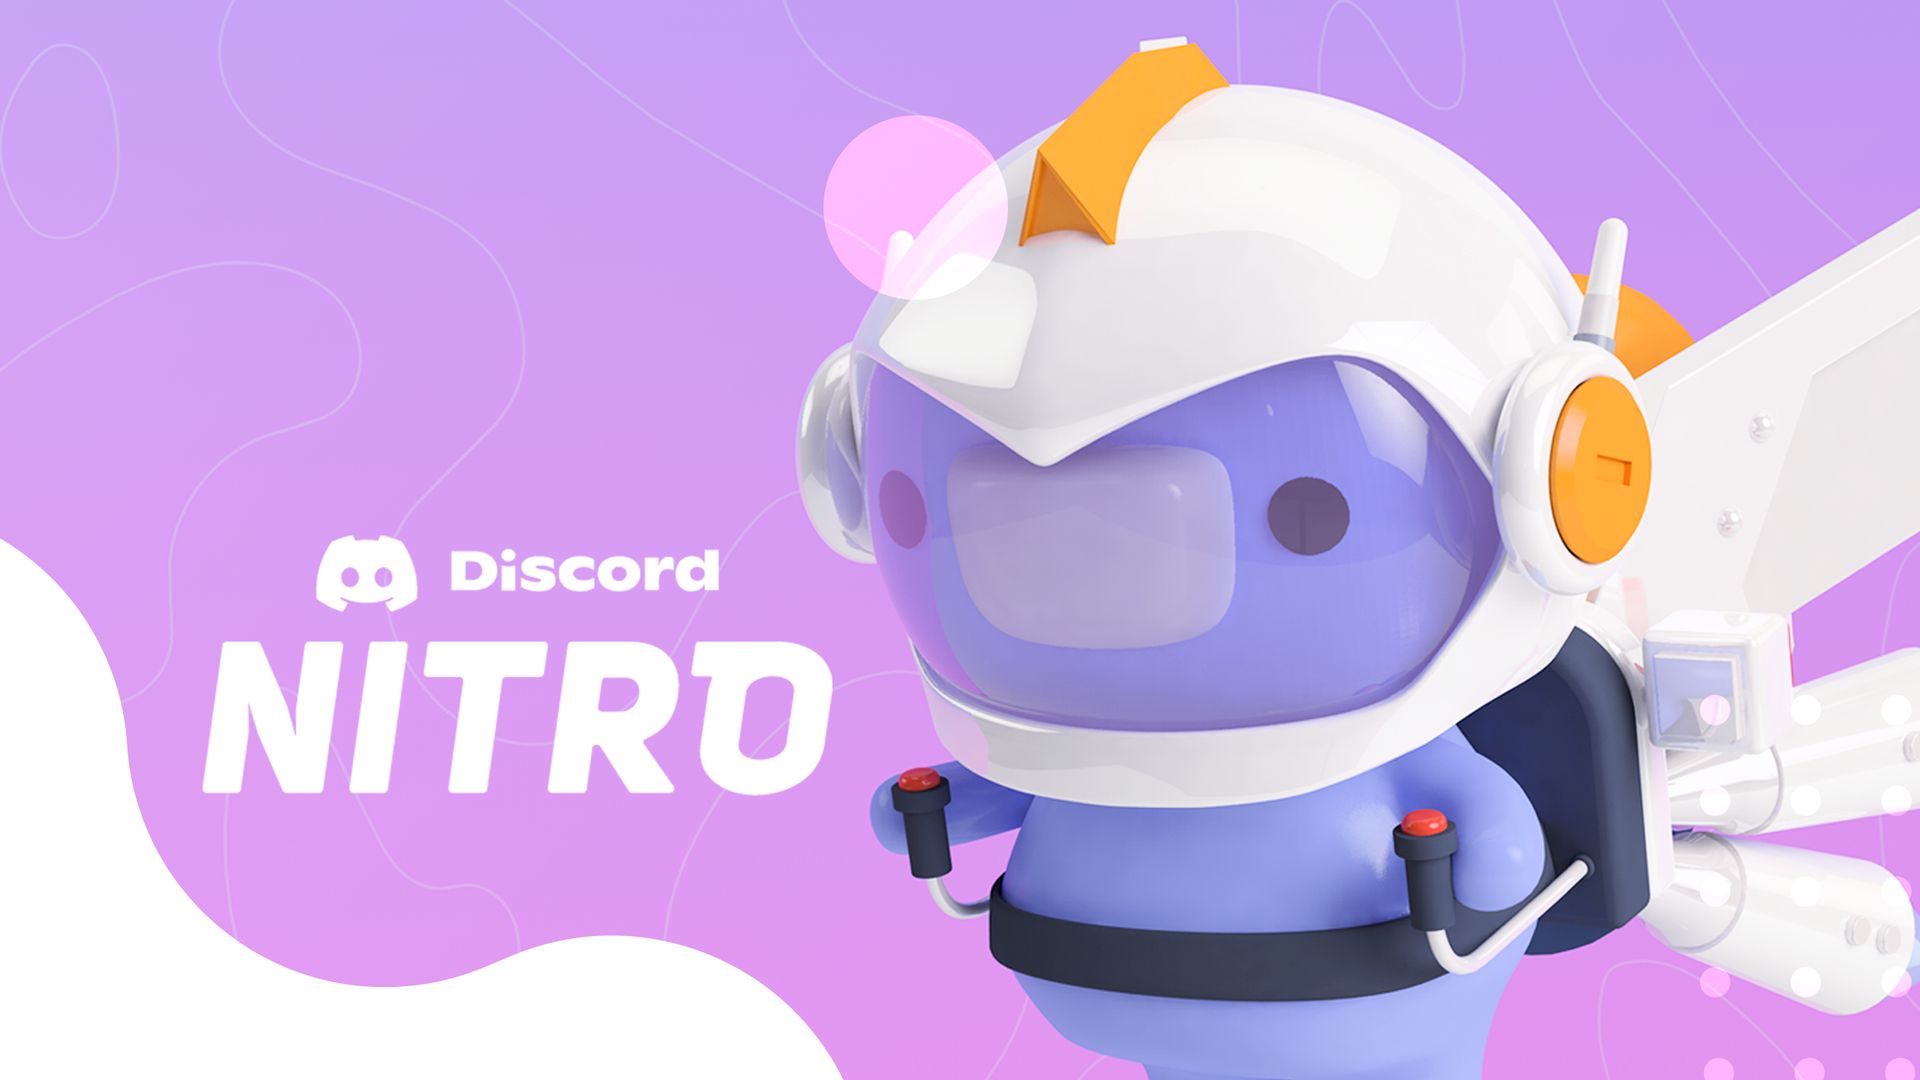 Comment obtenir Epic Games gratuitement Discord nitro?